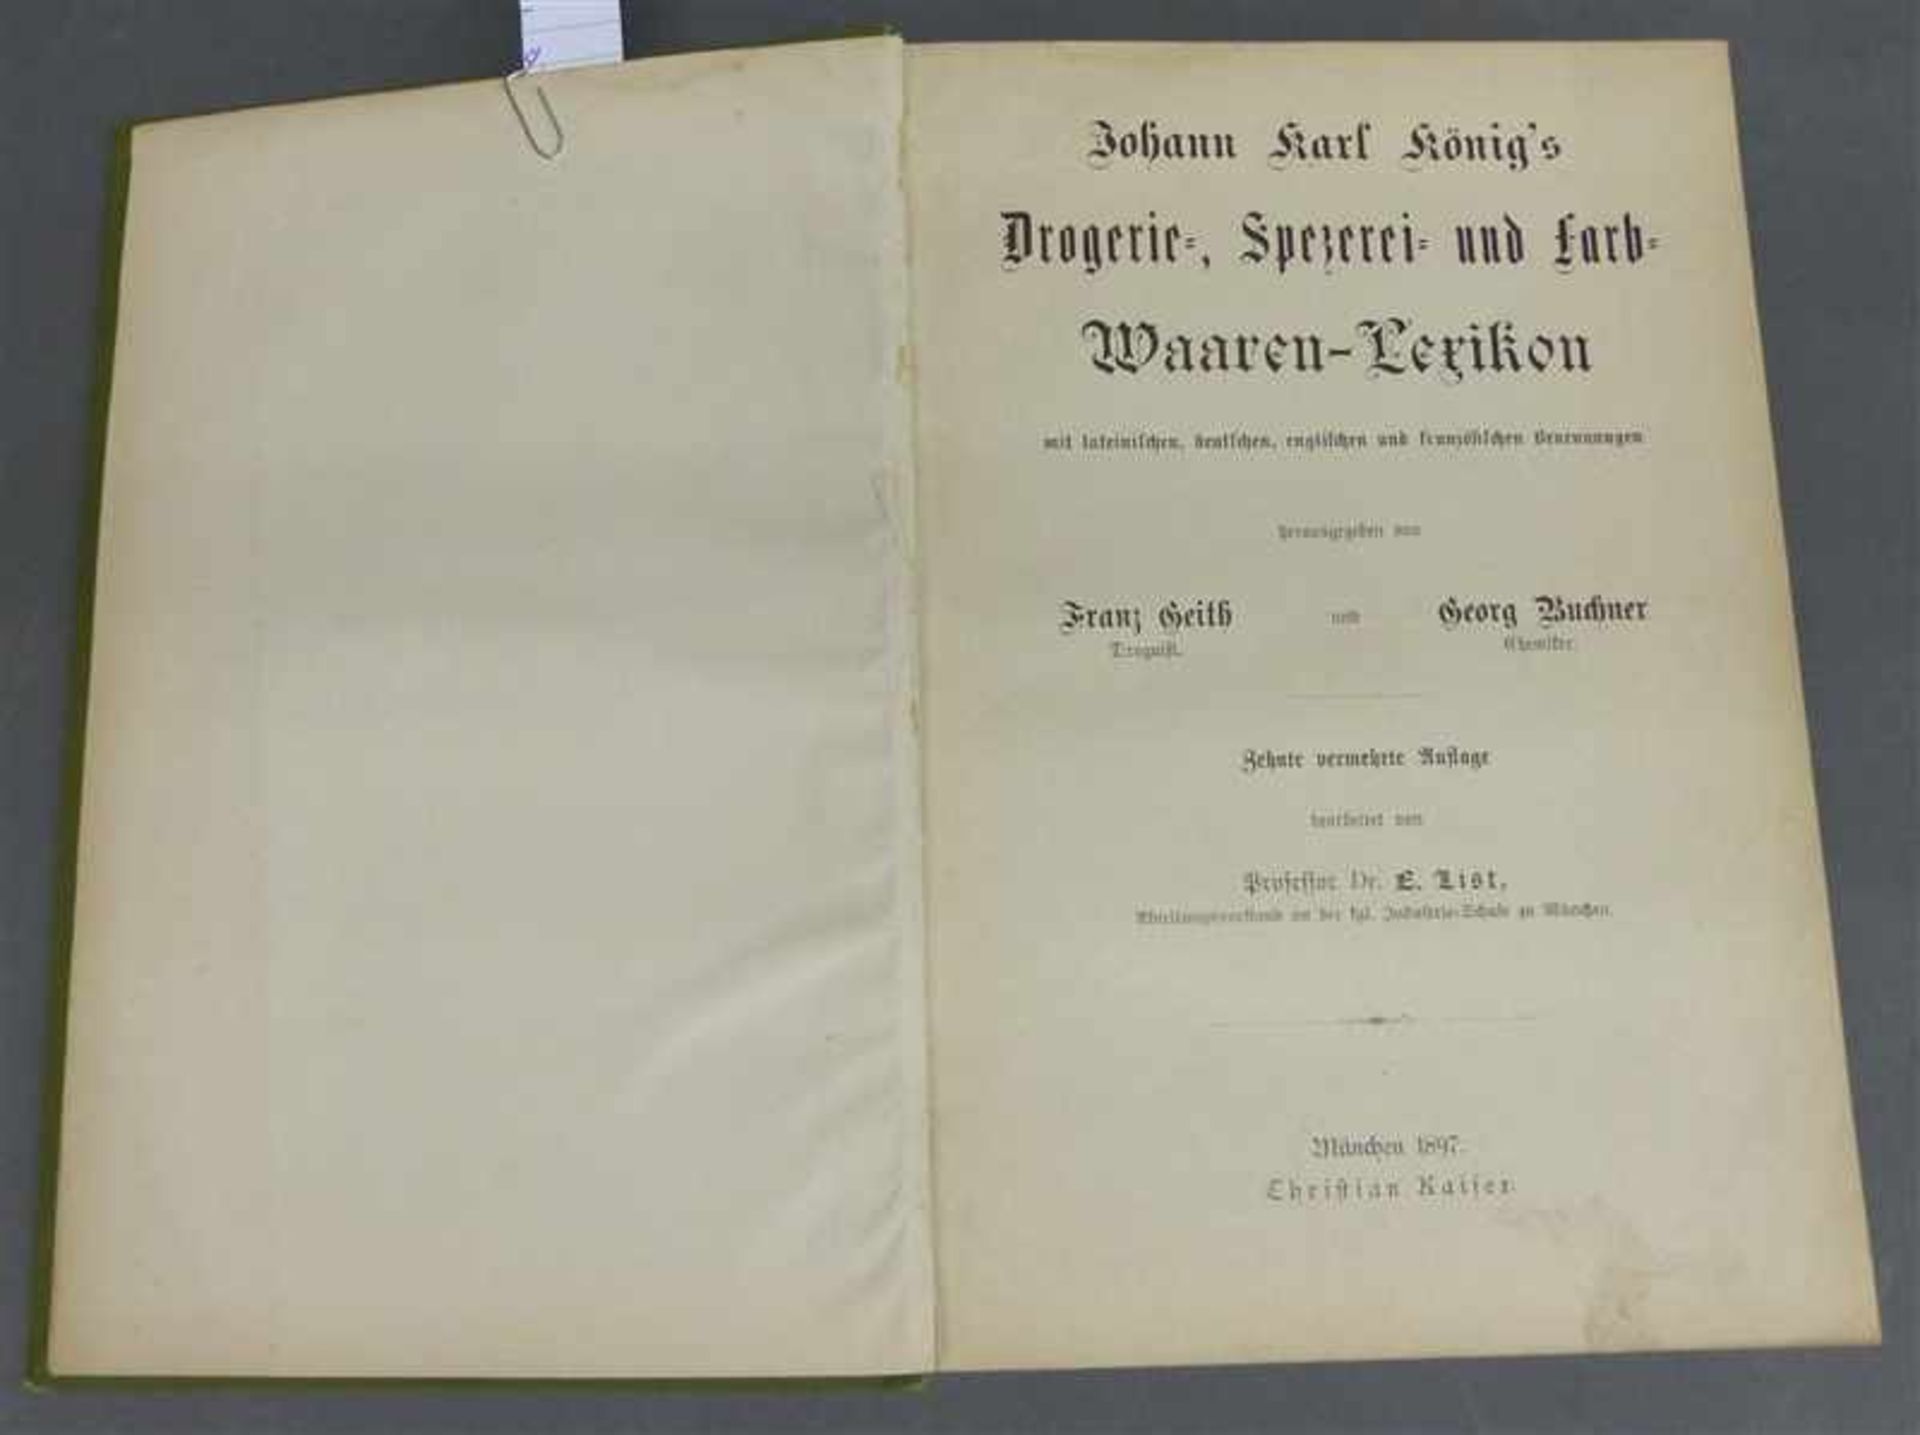 Buch Johann Karl König's "Drogerie, Spezerei- und Farb Waaren Lexikon", von Franz Geith und Georg